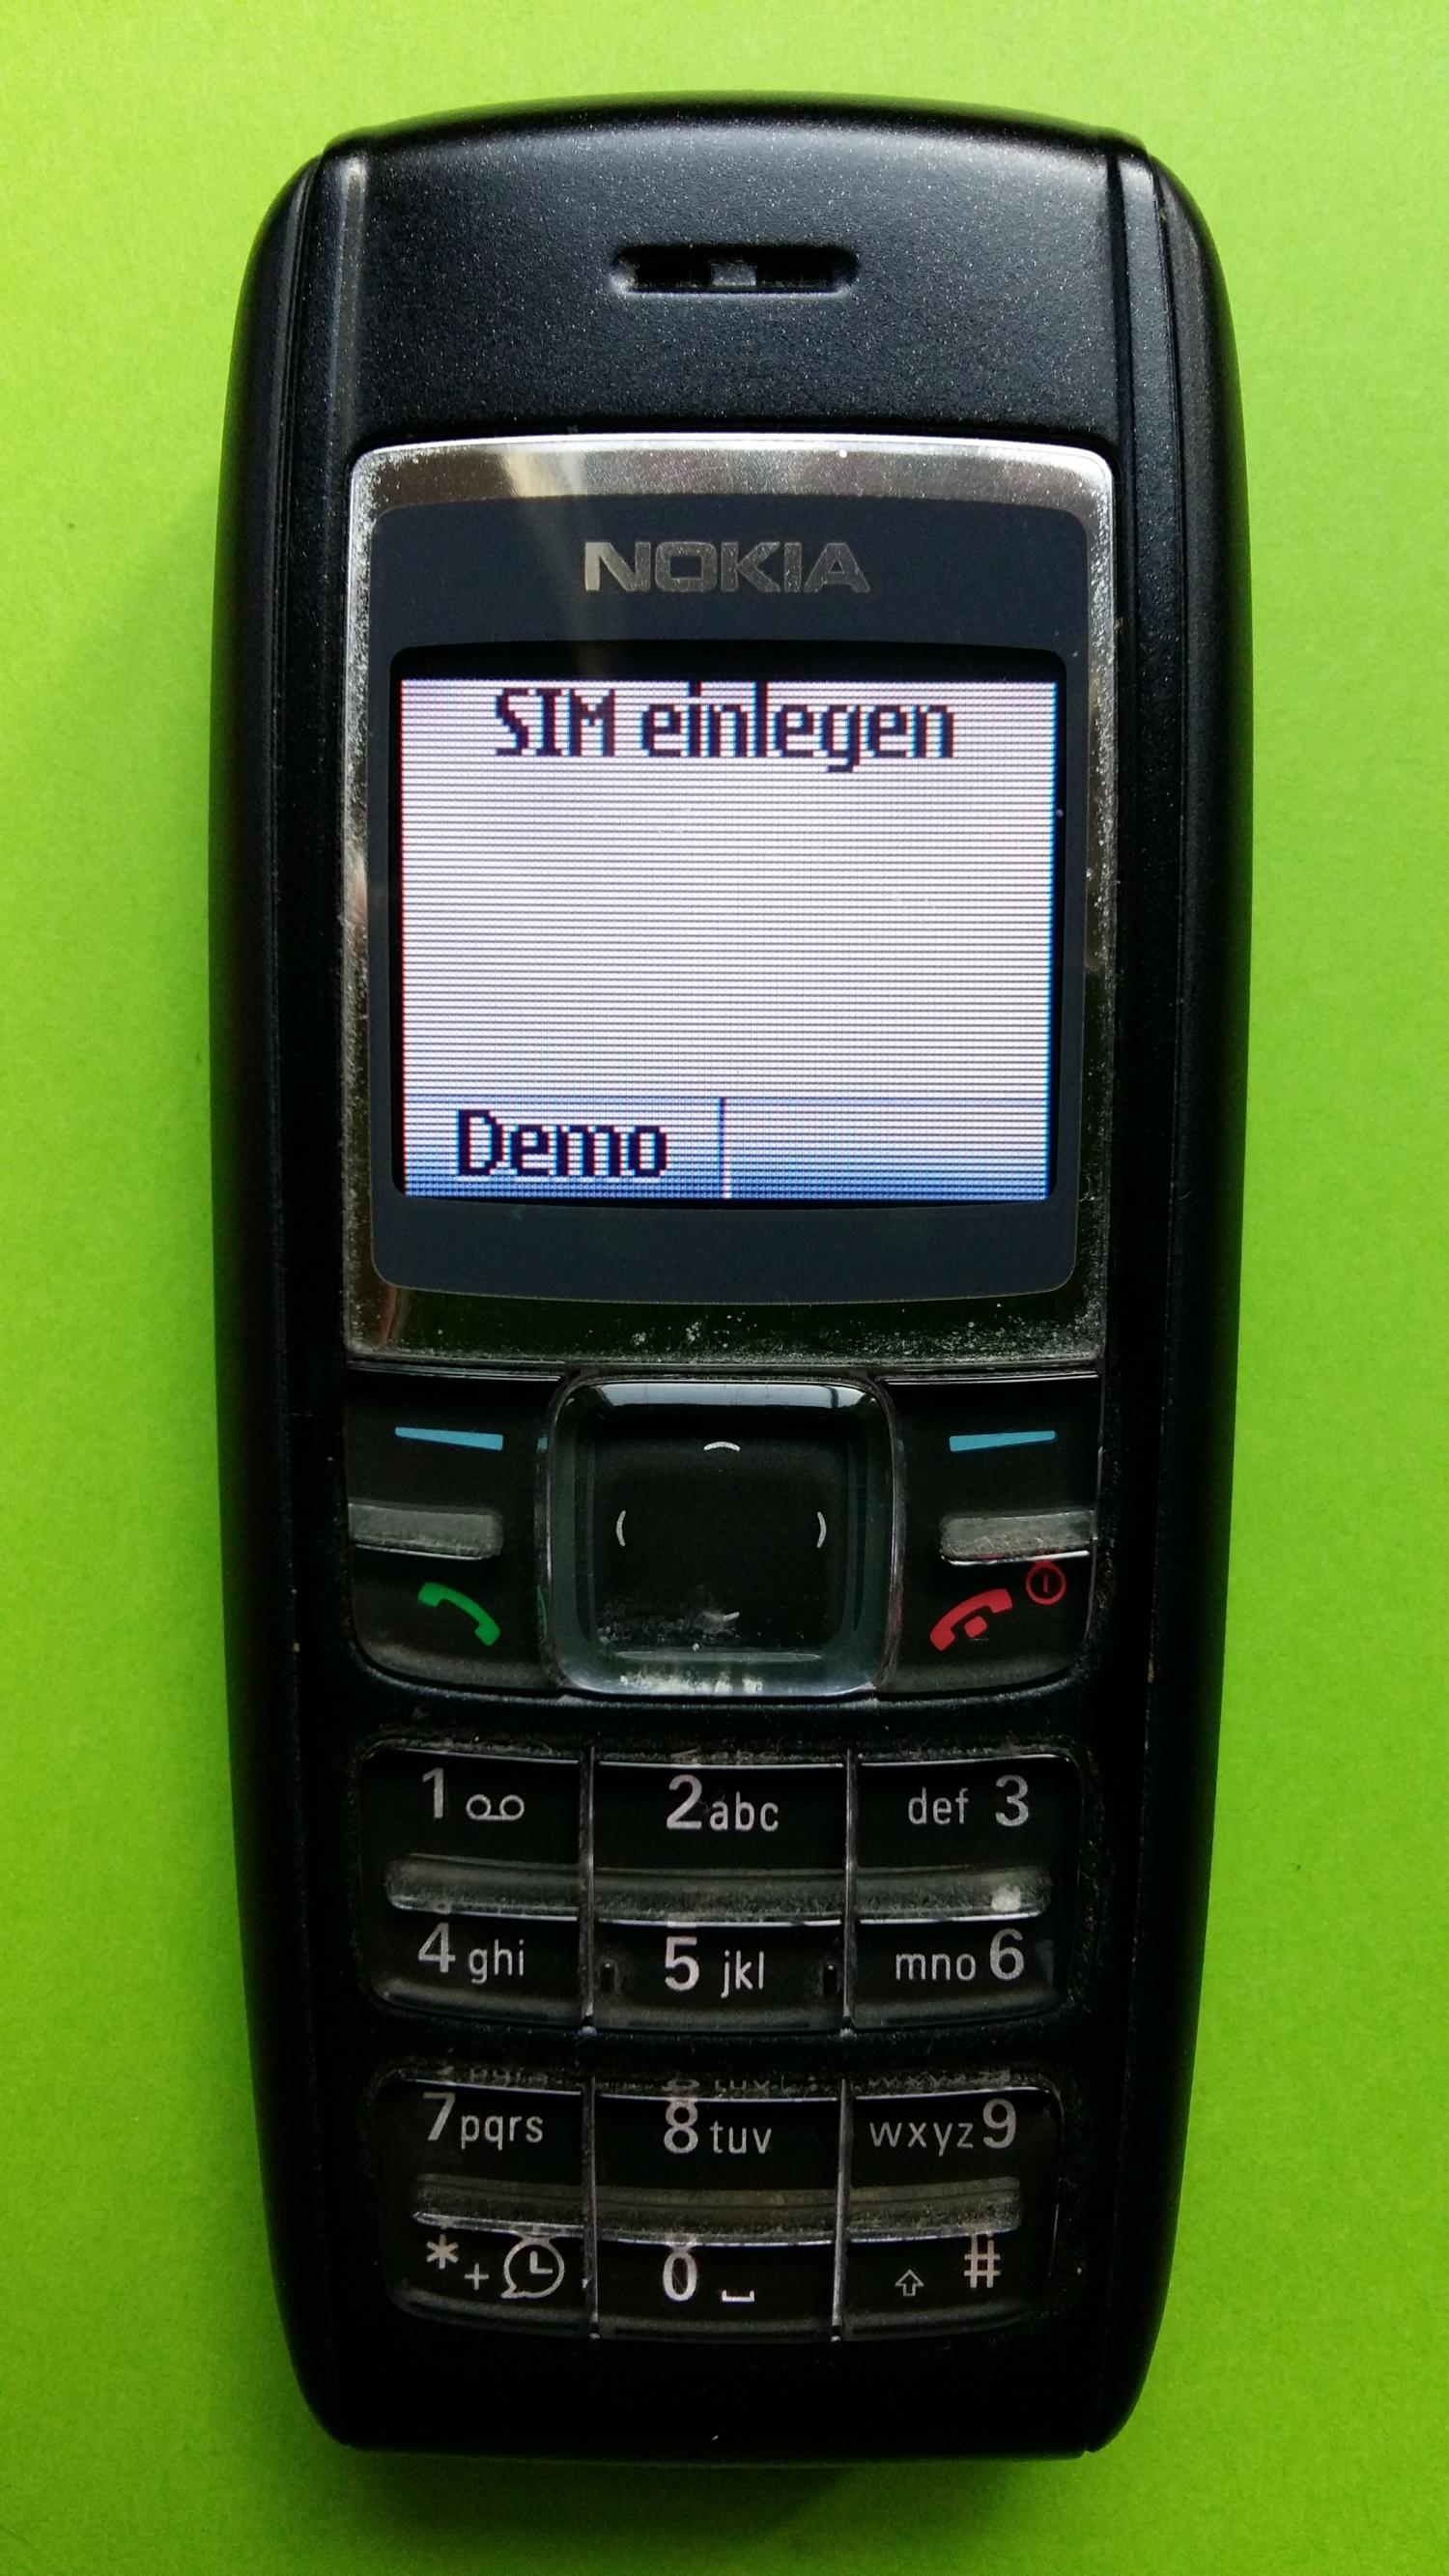 image-7300707-Nokia 1600 (1)1.jpg